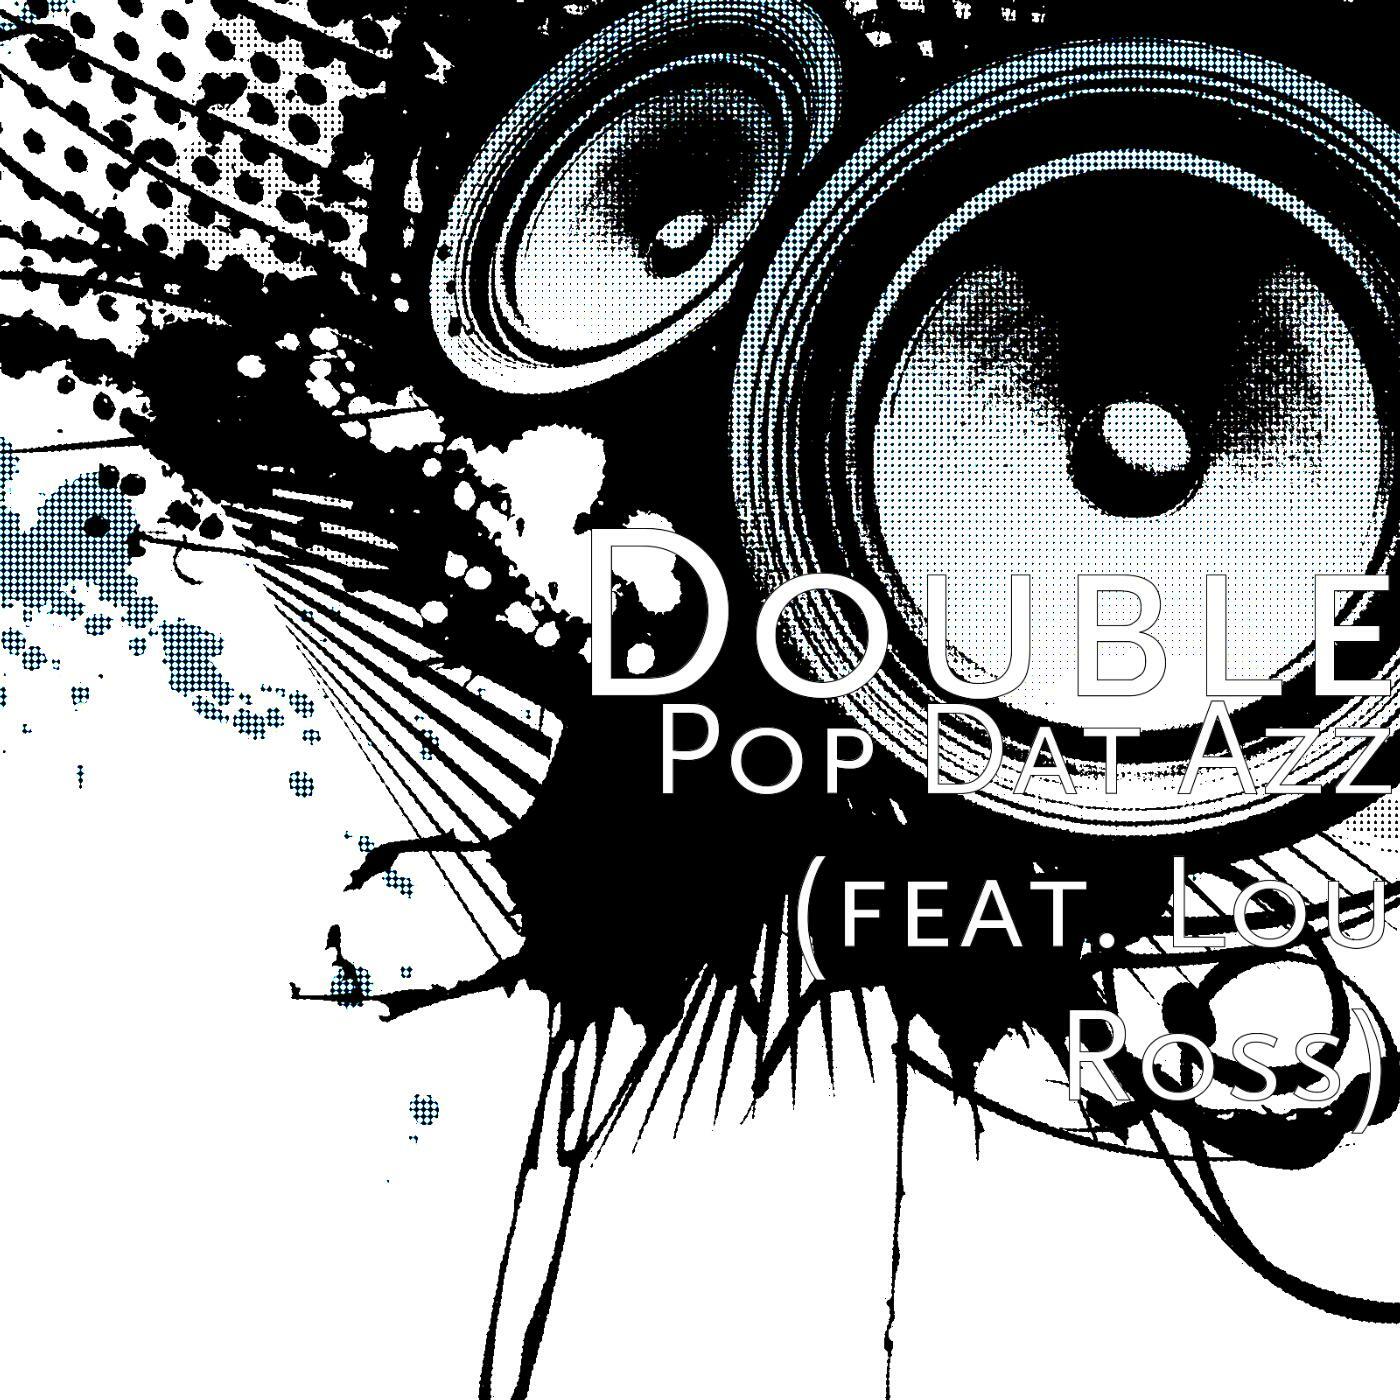 Double Pop Dat Azz Feat Lou Ross Iheart